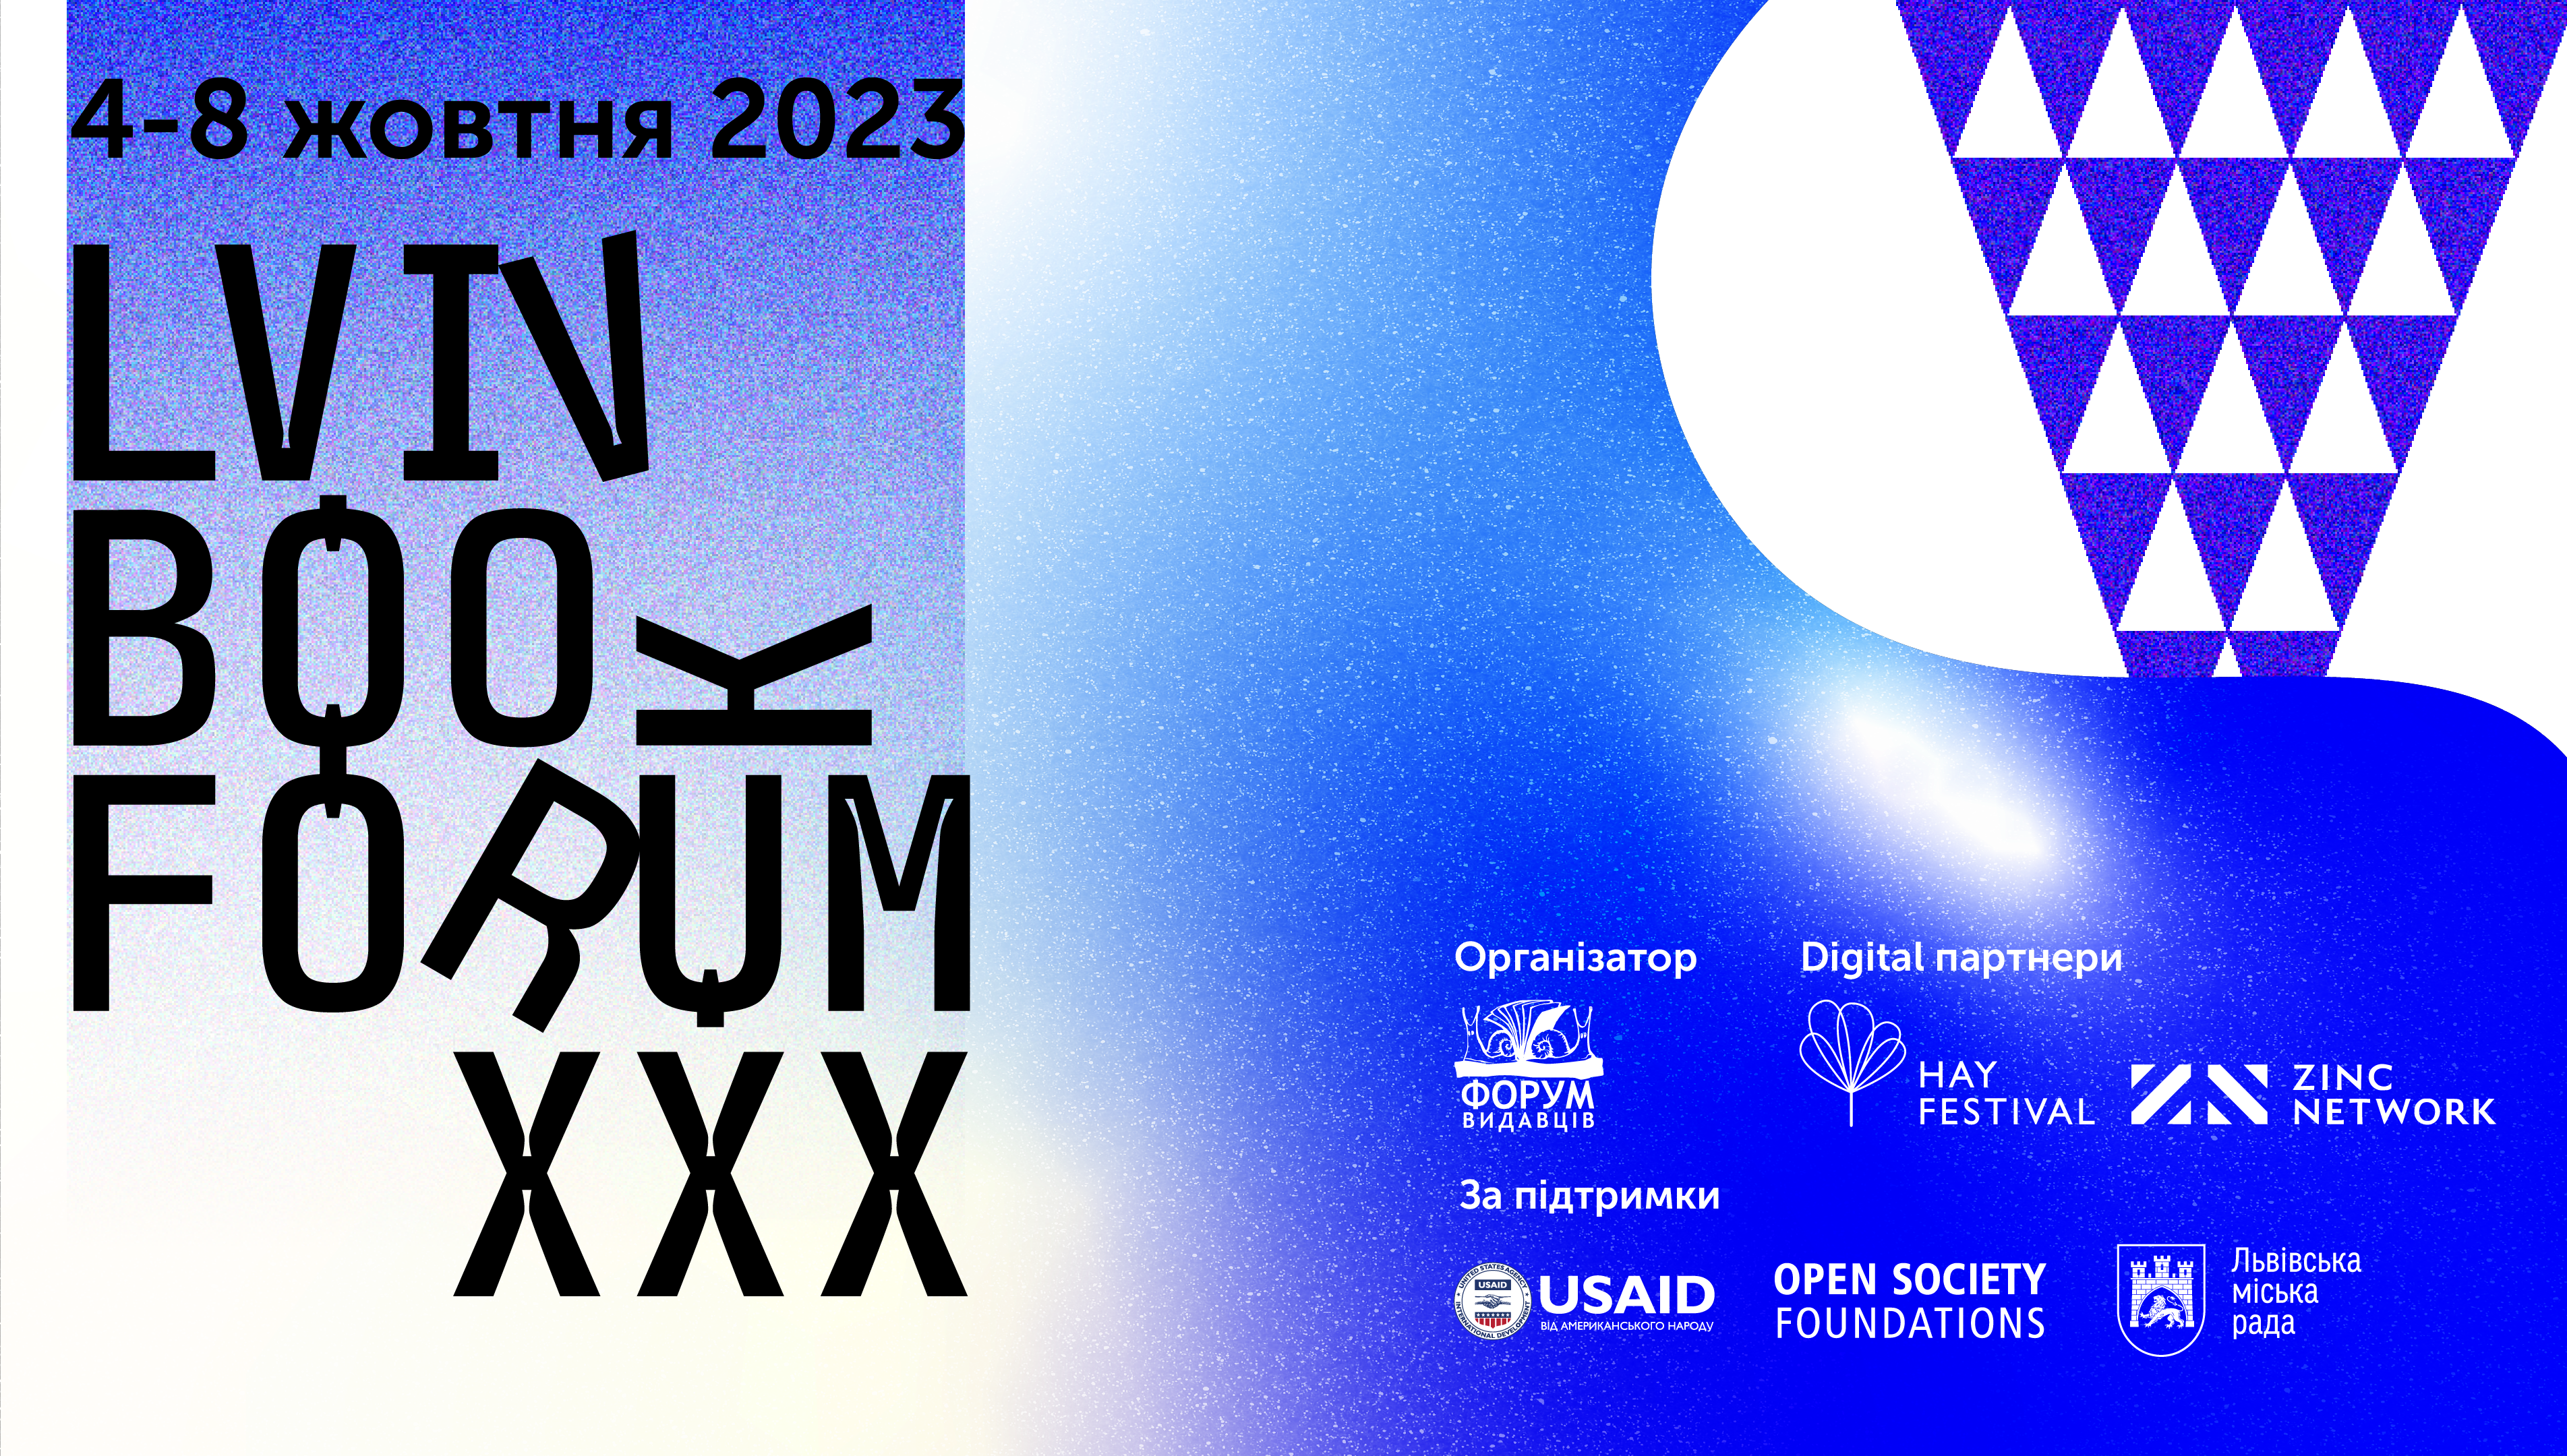 30-й Lviv BookForum розпочався